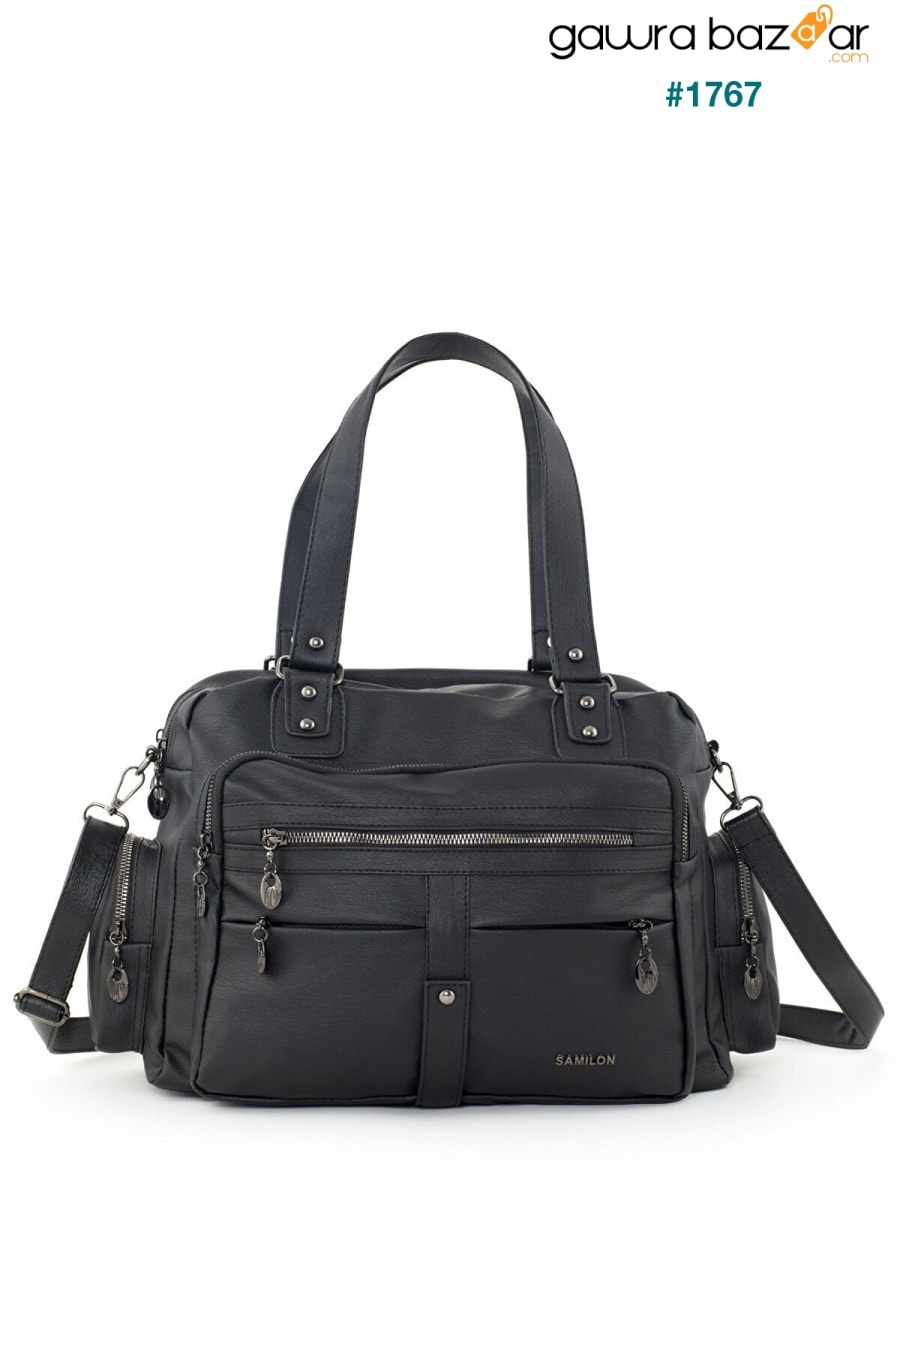 Frappe Bag للسيدات حقيبة كتف متعددة الأقسام من الجلد باللون الأسود - مع جيب مخفي في المقصورة الرئيسية Smurne 3